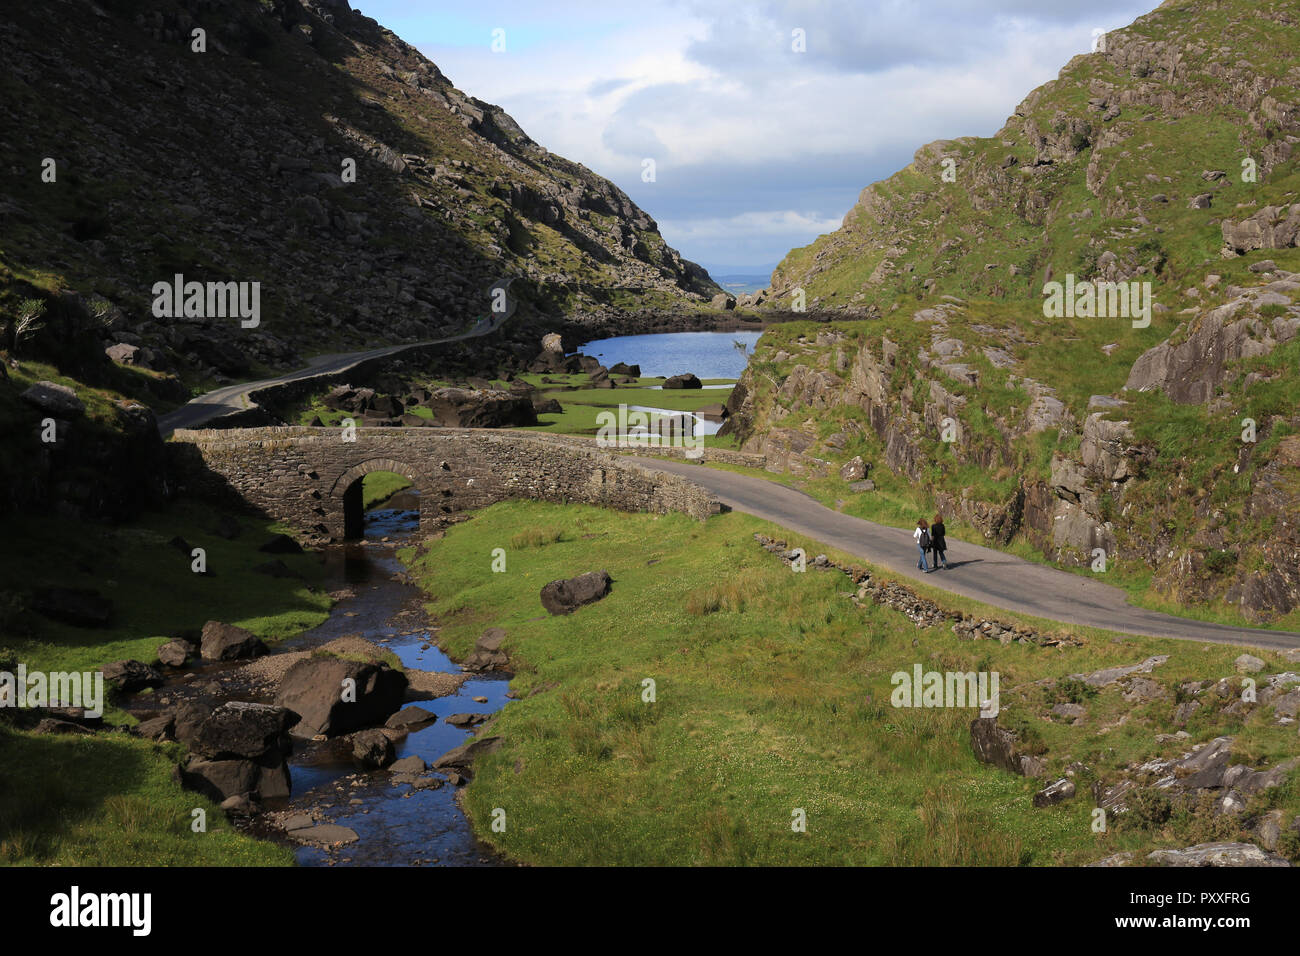 largo y estrecho paso de montaña con lagos glaciares, gap de dunloe, killarney, condado kerry irlanda Foto de stock